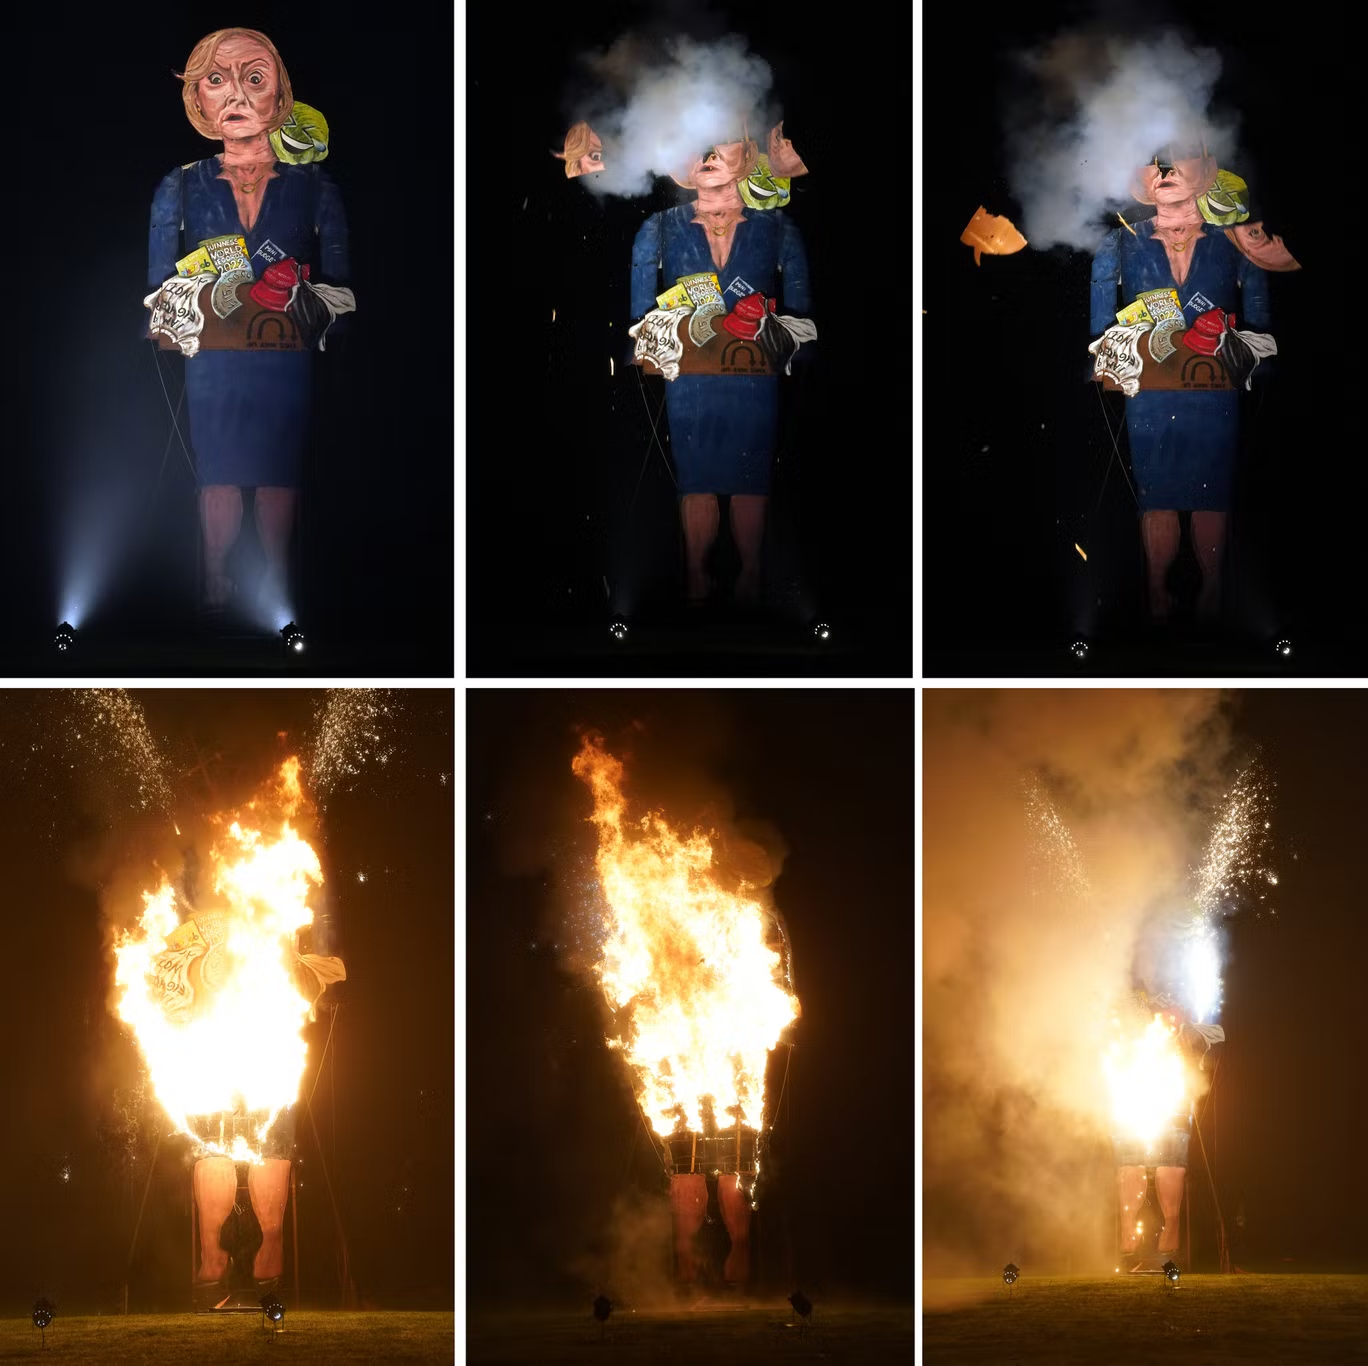 英国《独立报》称，这是特拉斯肖像模型被烧的现场图